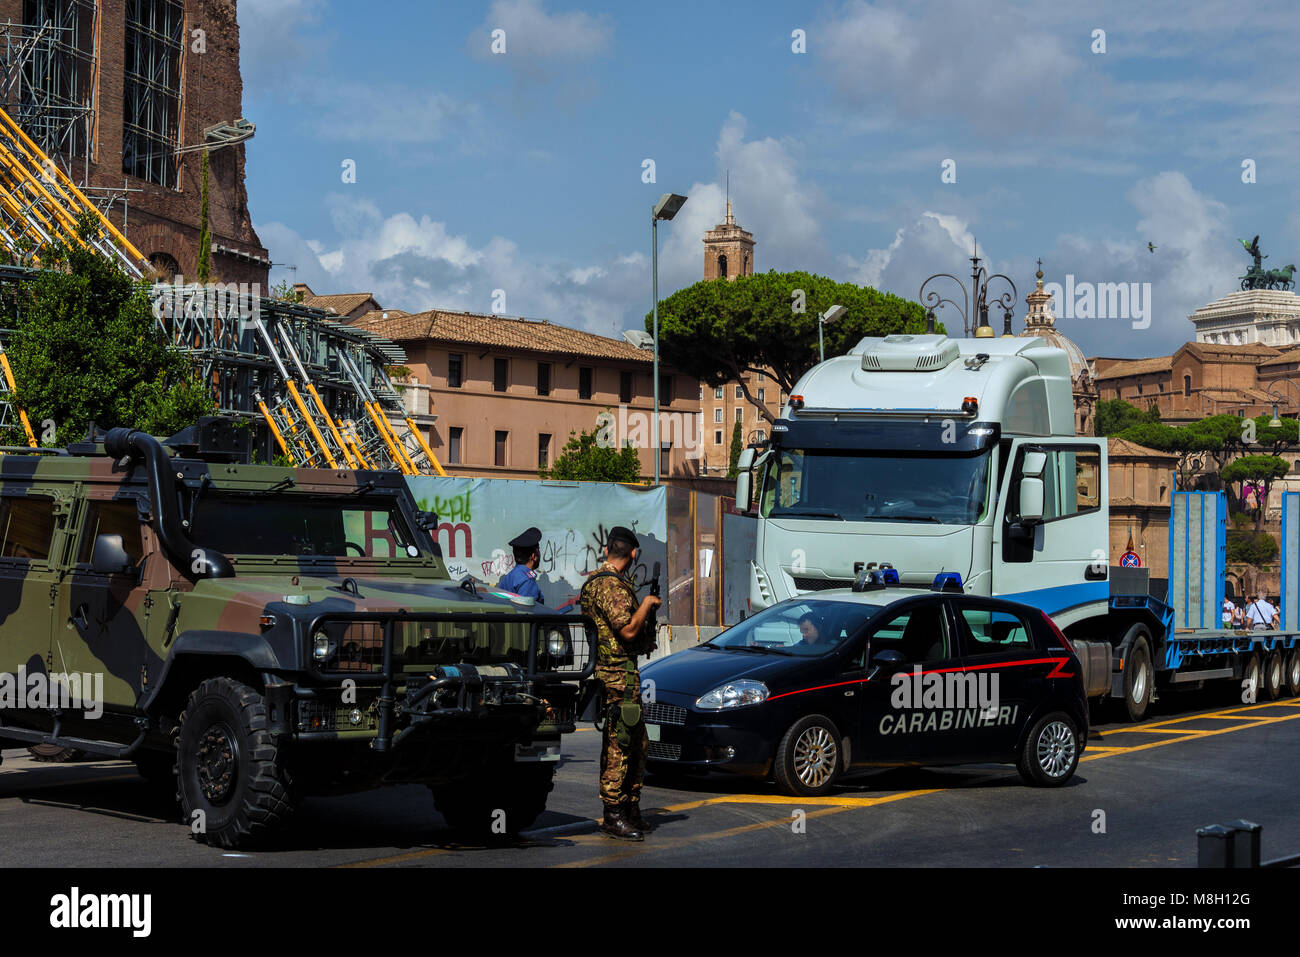 Uno dei molti checkpoint militari situate in tutta Roma. Questo uno sulla "Via dei per Imperiali' con il Colosseo in background Foto Stock